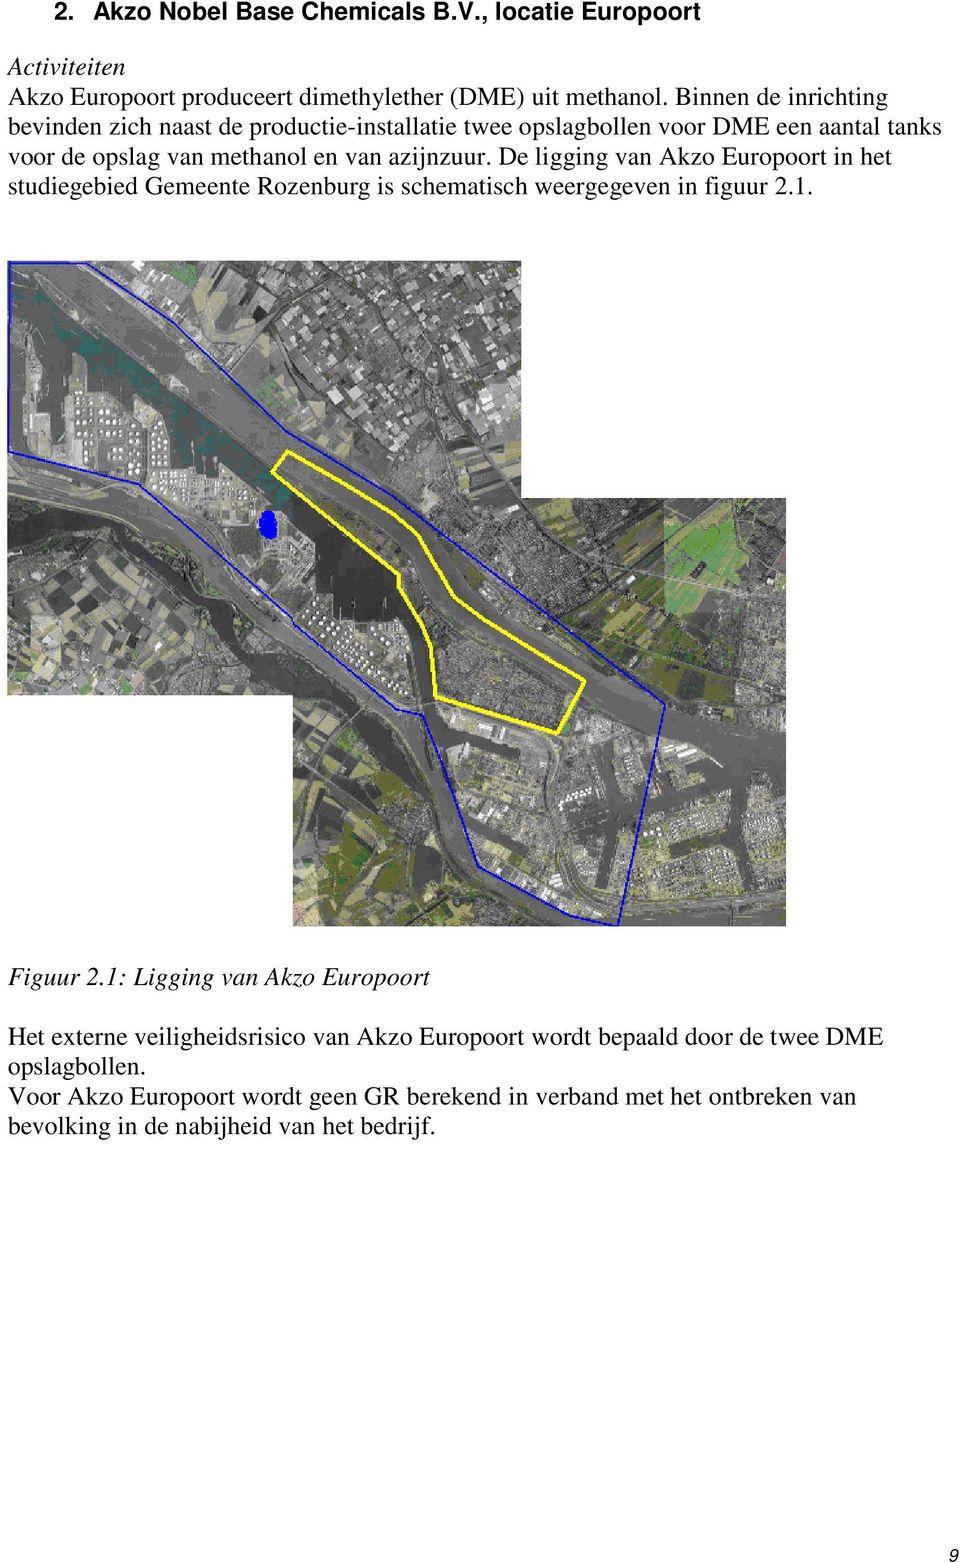 De ligging van Akzo Europoort in het studiegebied Gemeente Rozenburg is schematisch weergegeven in figuur 2.1. Figuur 2.